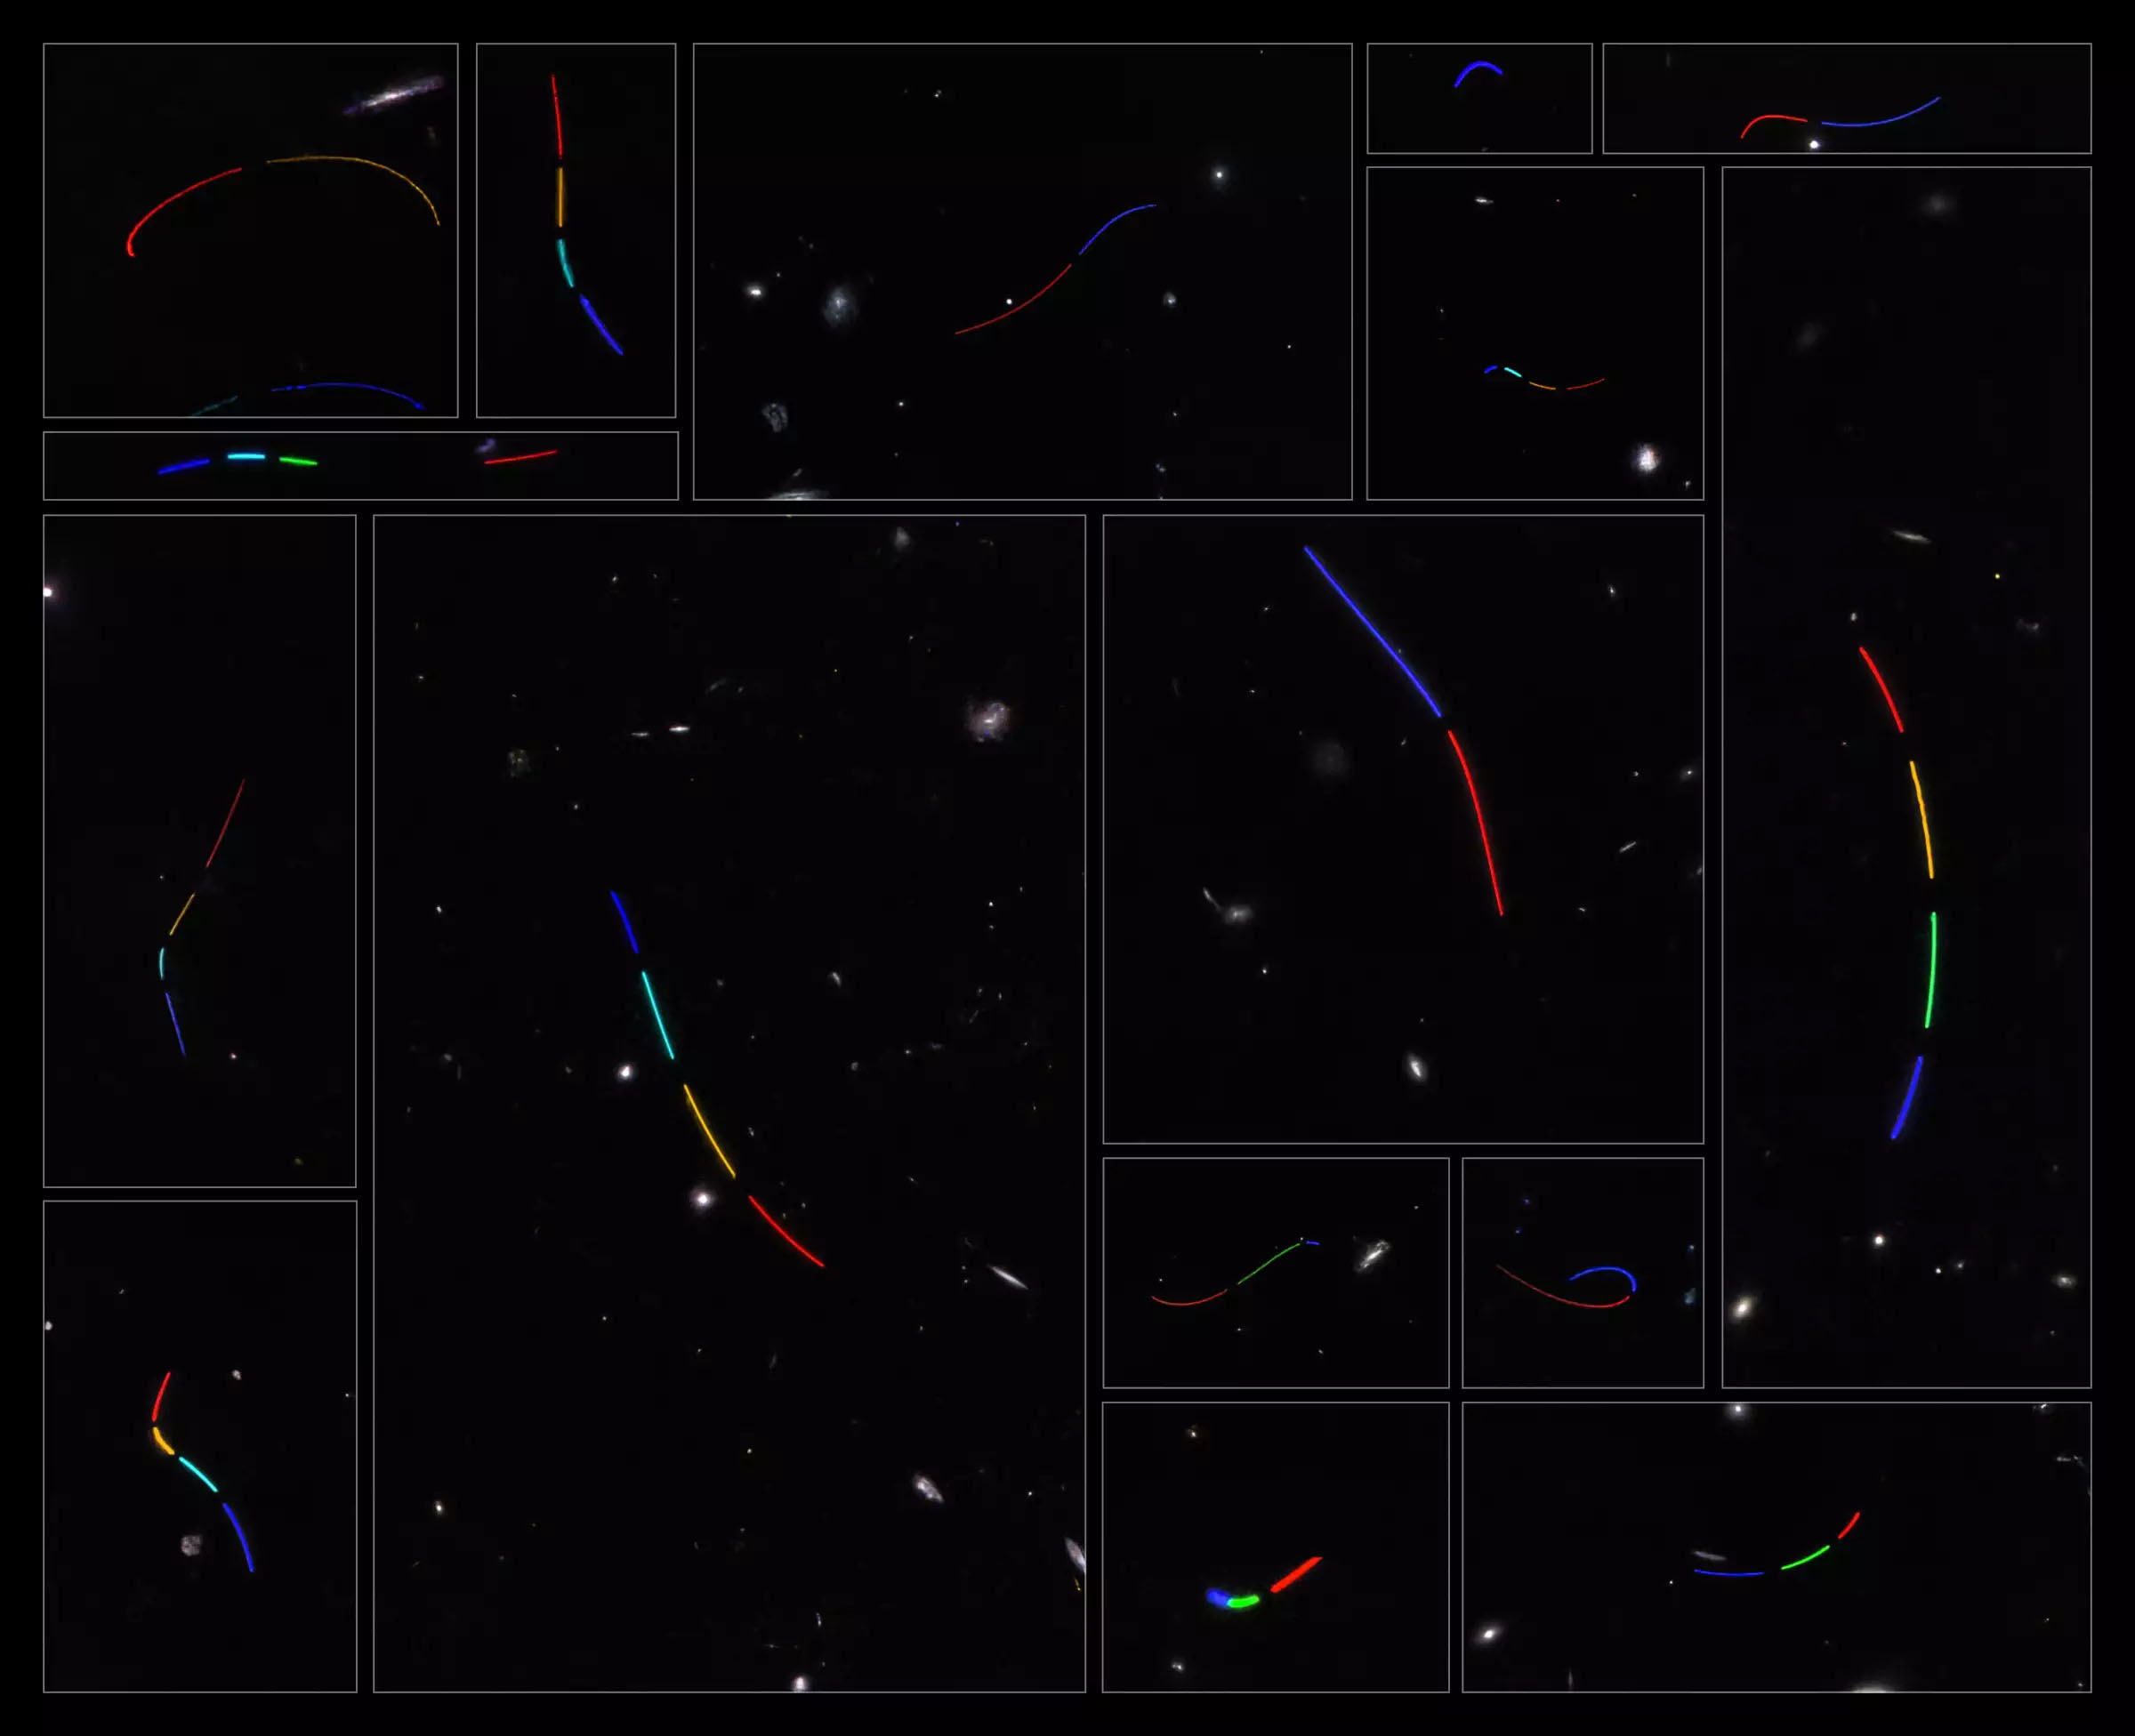 Esta imagen se compone de 16 conjuntos de datos diferentes del telescopio espacial Hubble estudiados como parte del proyecto de ciencia ciudadana Asteroid Hunter.